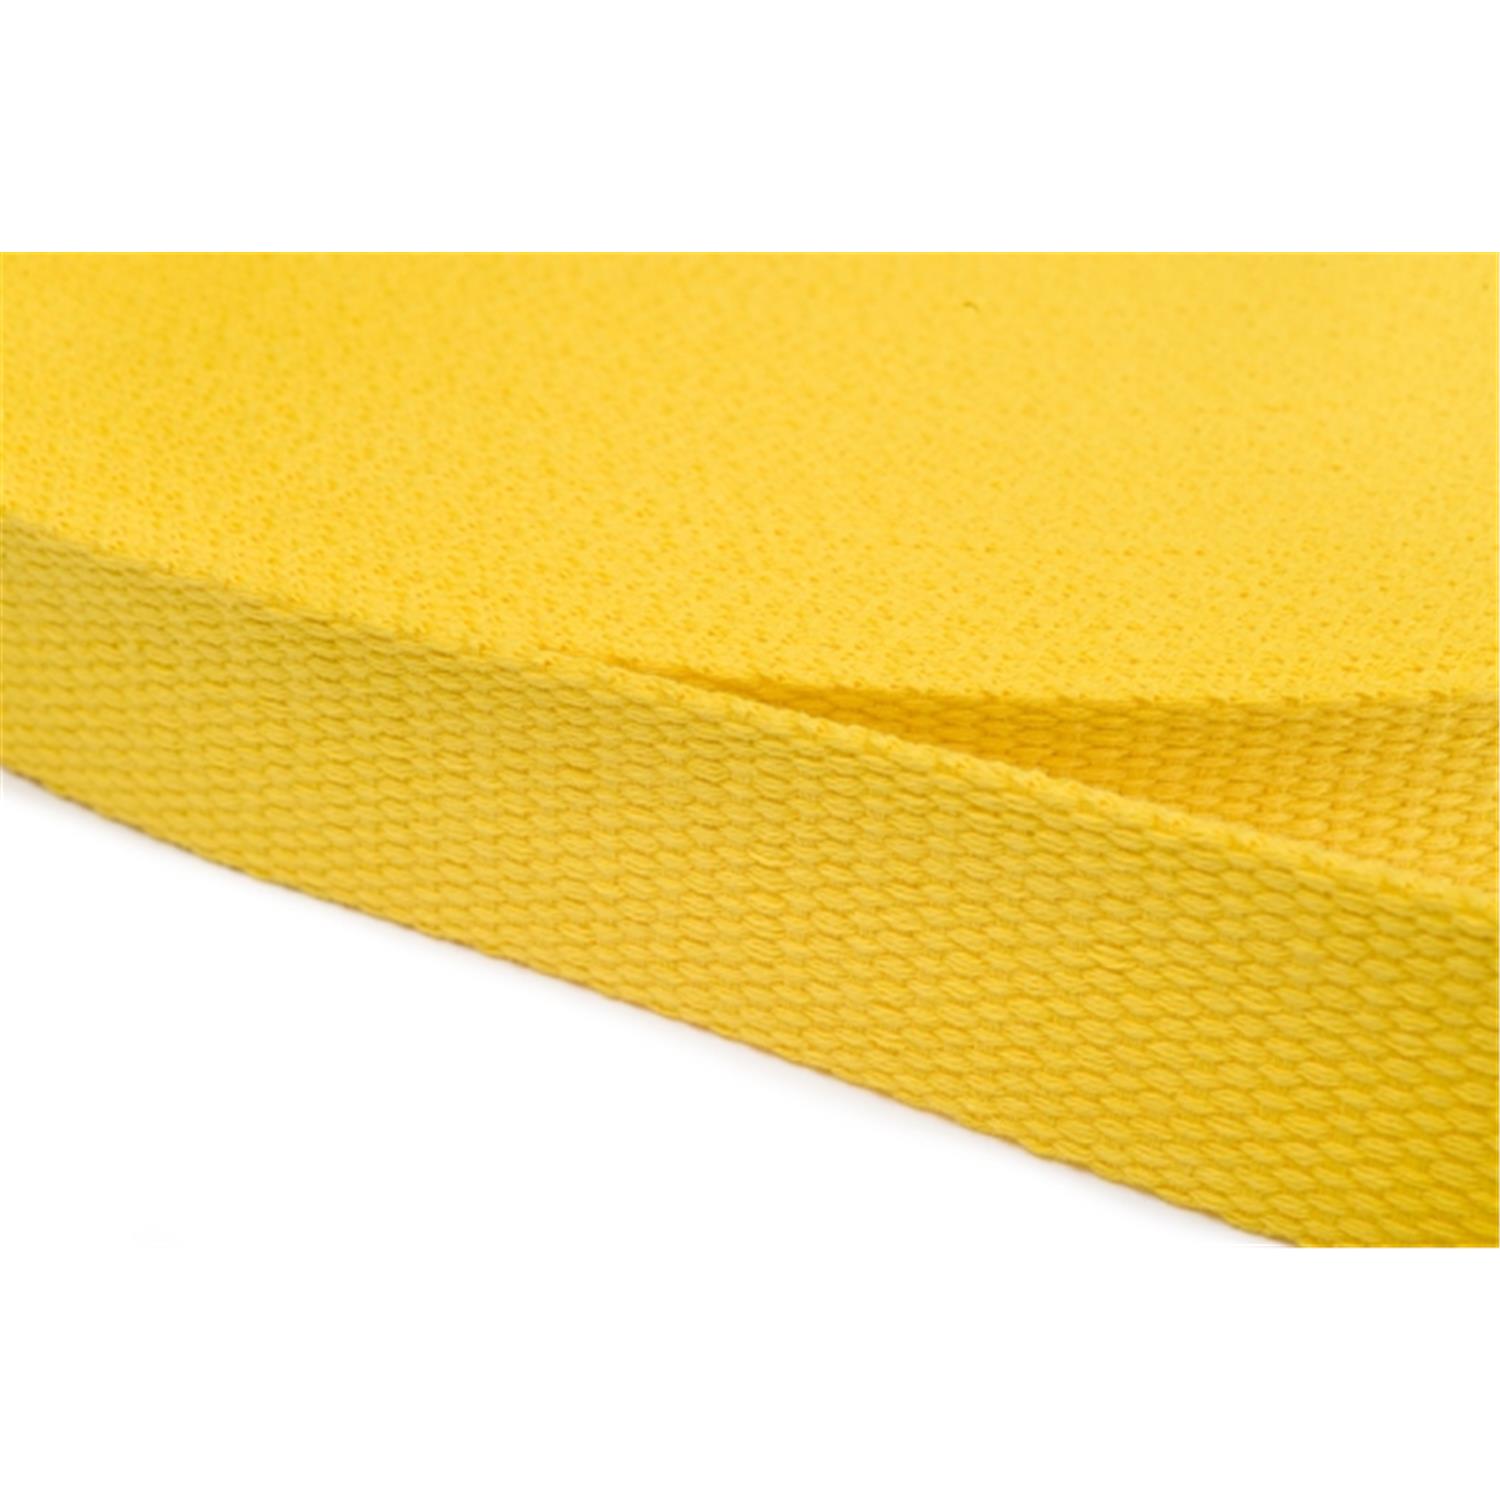 Gurtband aus Baumwolle 25mm in 20 Farben 05 - gelb 12 Meter